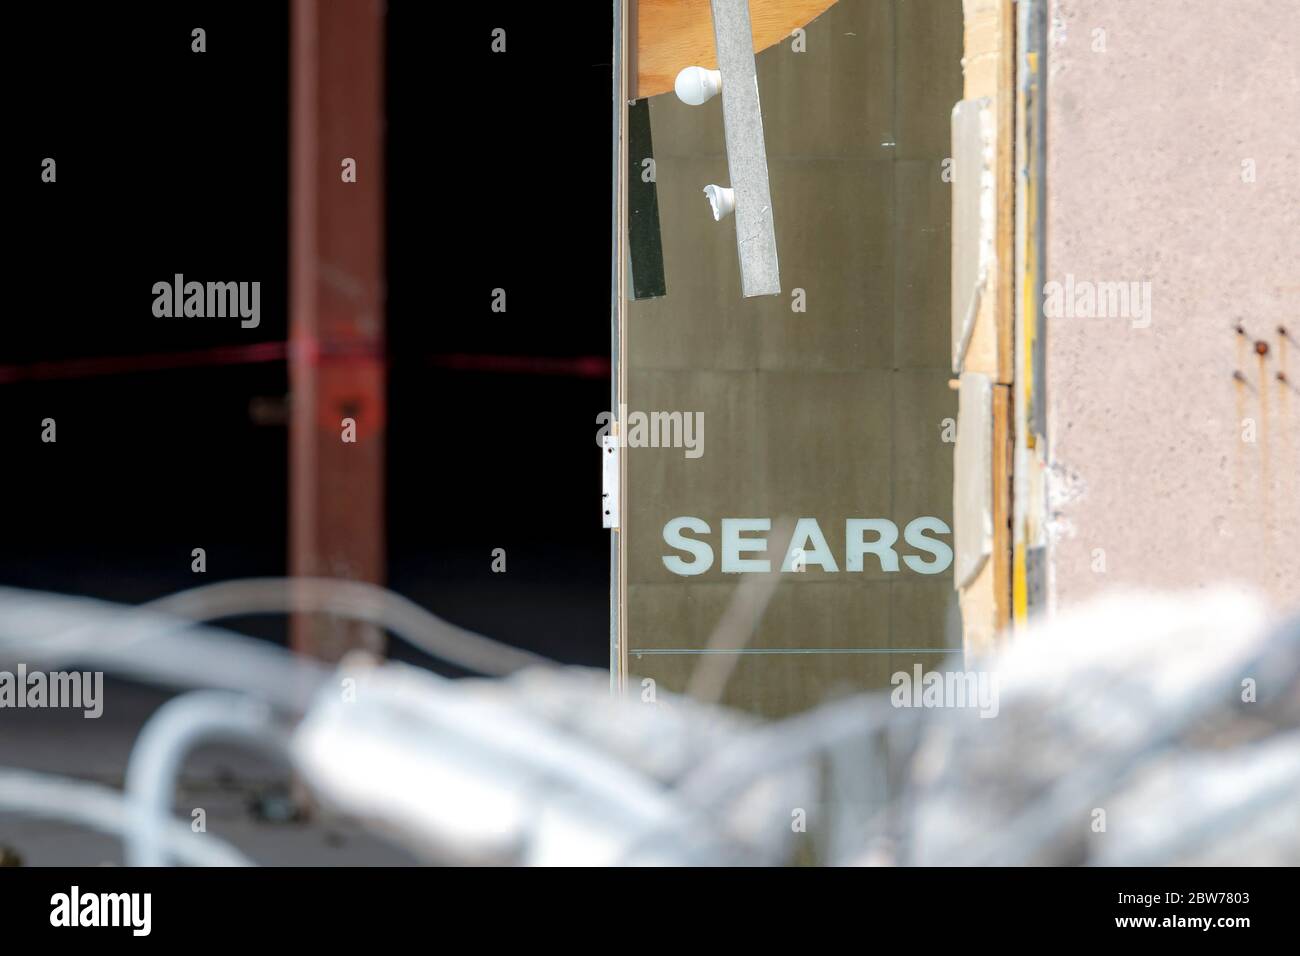 Saint John, N.-B., Canada - 2 mars 2019 : démolition du magasin Sears. Un gros plan du mot Sears apparaît sur une fenêtre d'un bâtiment partiellement démoli Banque D'Images